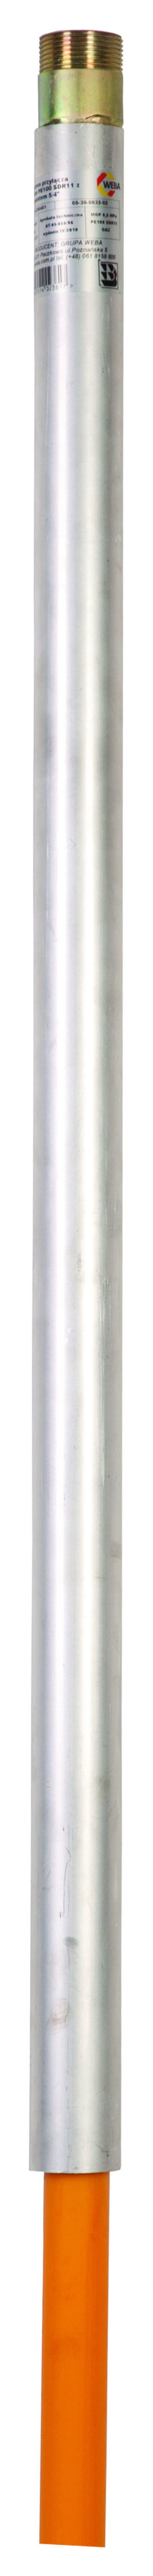 Weba Przyłącze gazu polietylenowe 40mm x 5/4" 15000mm proste (05-30-0040-04) 1